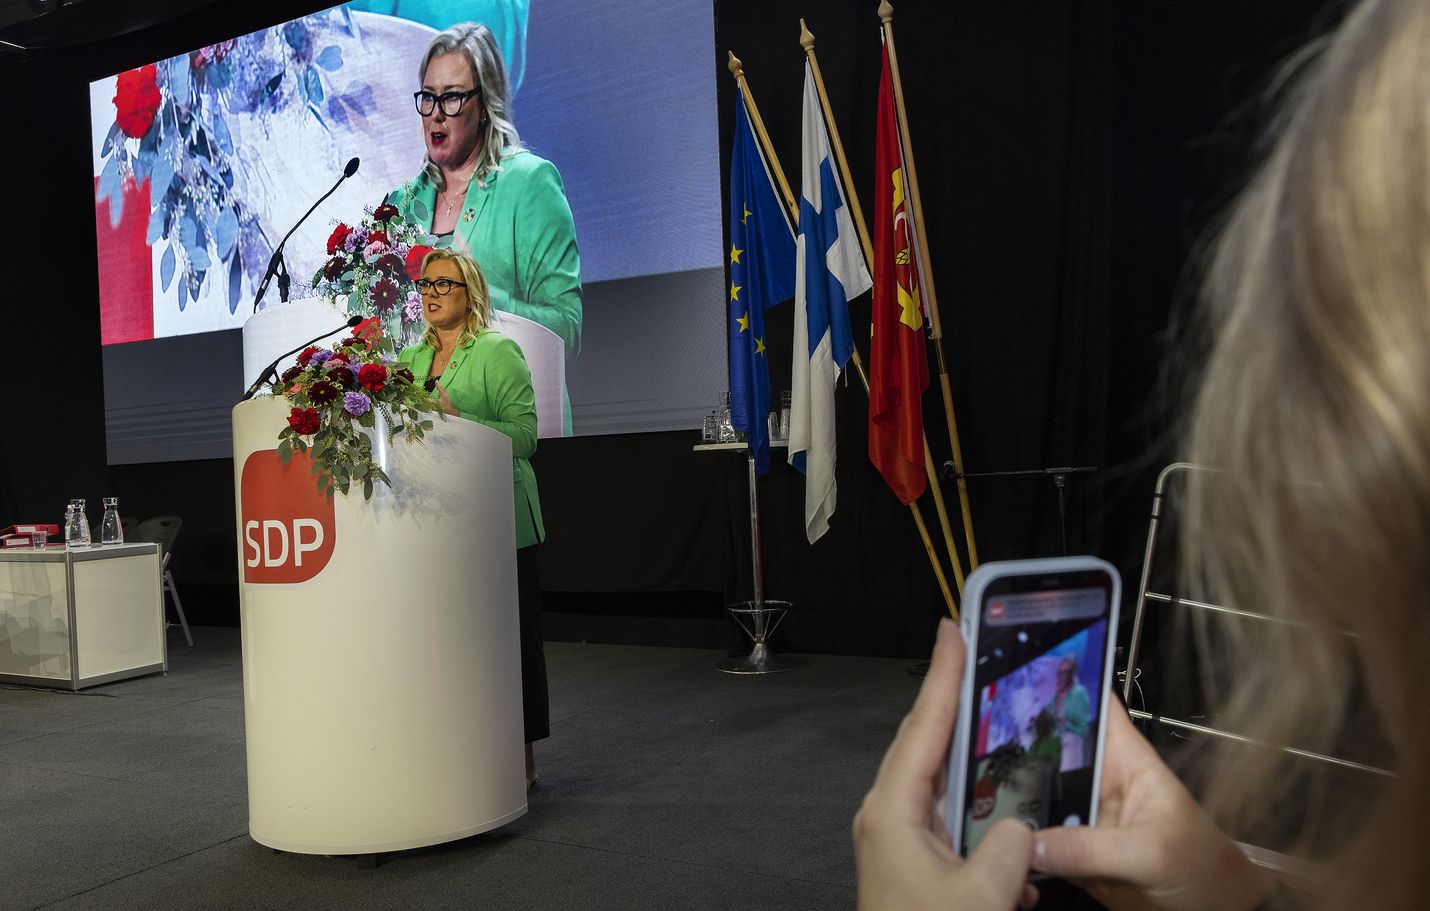 Komissaari Jutta Urpilainen kertoi sdp:n puoluekokouksessa syyskuussa, että hän kertoo mahdollisesta presidenttiehdokkuudestaan marraskuun lopulla. Puoluekokouspuheensa jälkeen Urpilaista ei ole kotimaan mediassa juuri näkynyt.